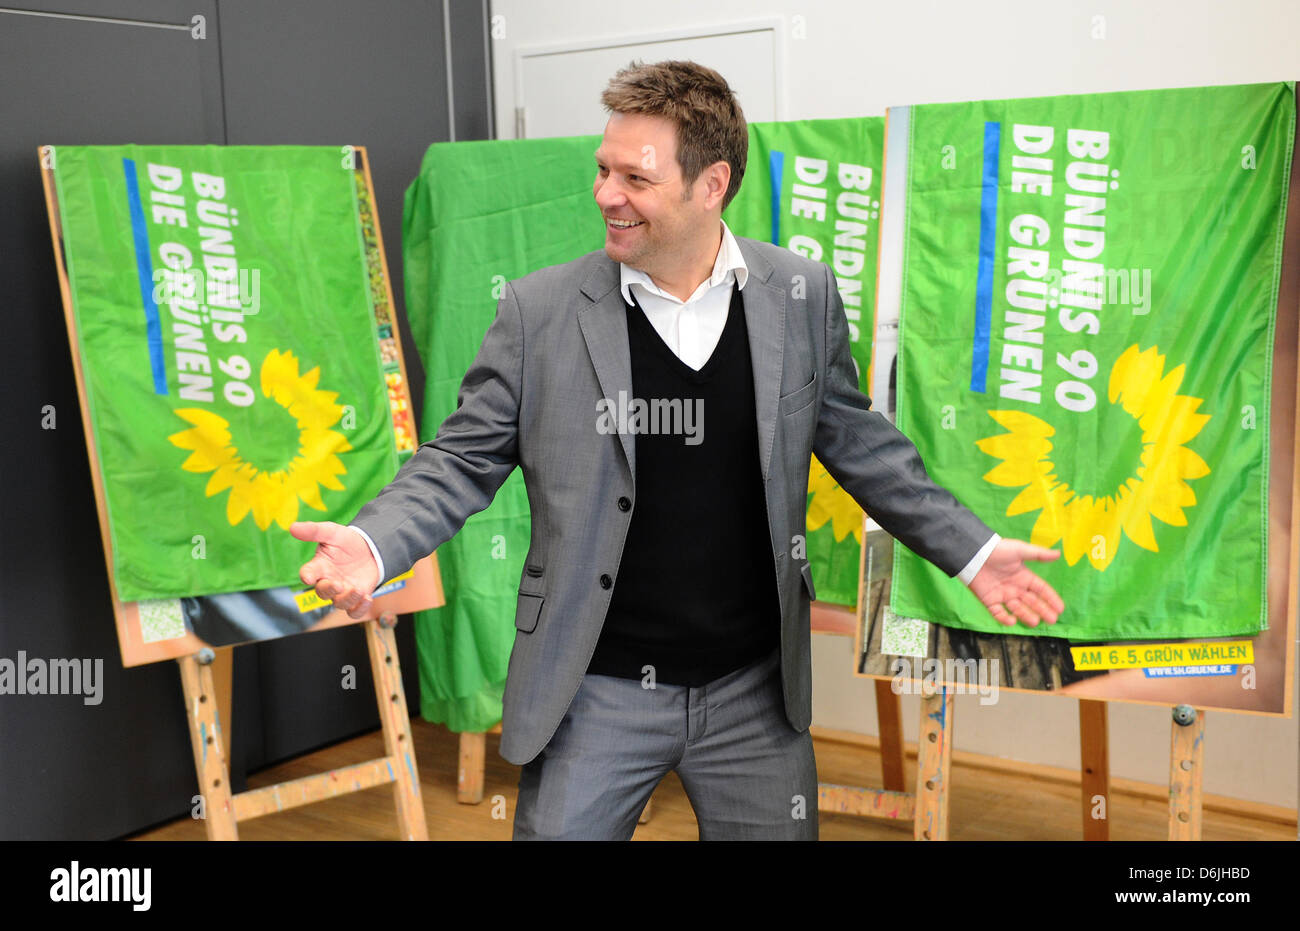 Le premier candidat vert Robert Habeck dévoile une affiche de campagne électorale 'Alliance 90/Les Verts lors d'une conférence de presse à Kiel, Allemagne, 19 mars 2012. Le 6 mai 2012, les élections parlementaires ont lieu dans la région de Schleswig-Holstein. Photo : CHRISTIAN CHARISIUS Banque D'Images